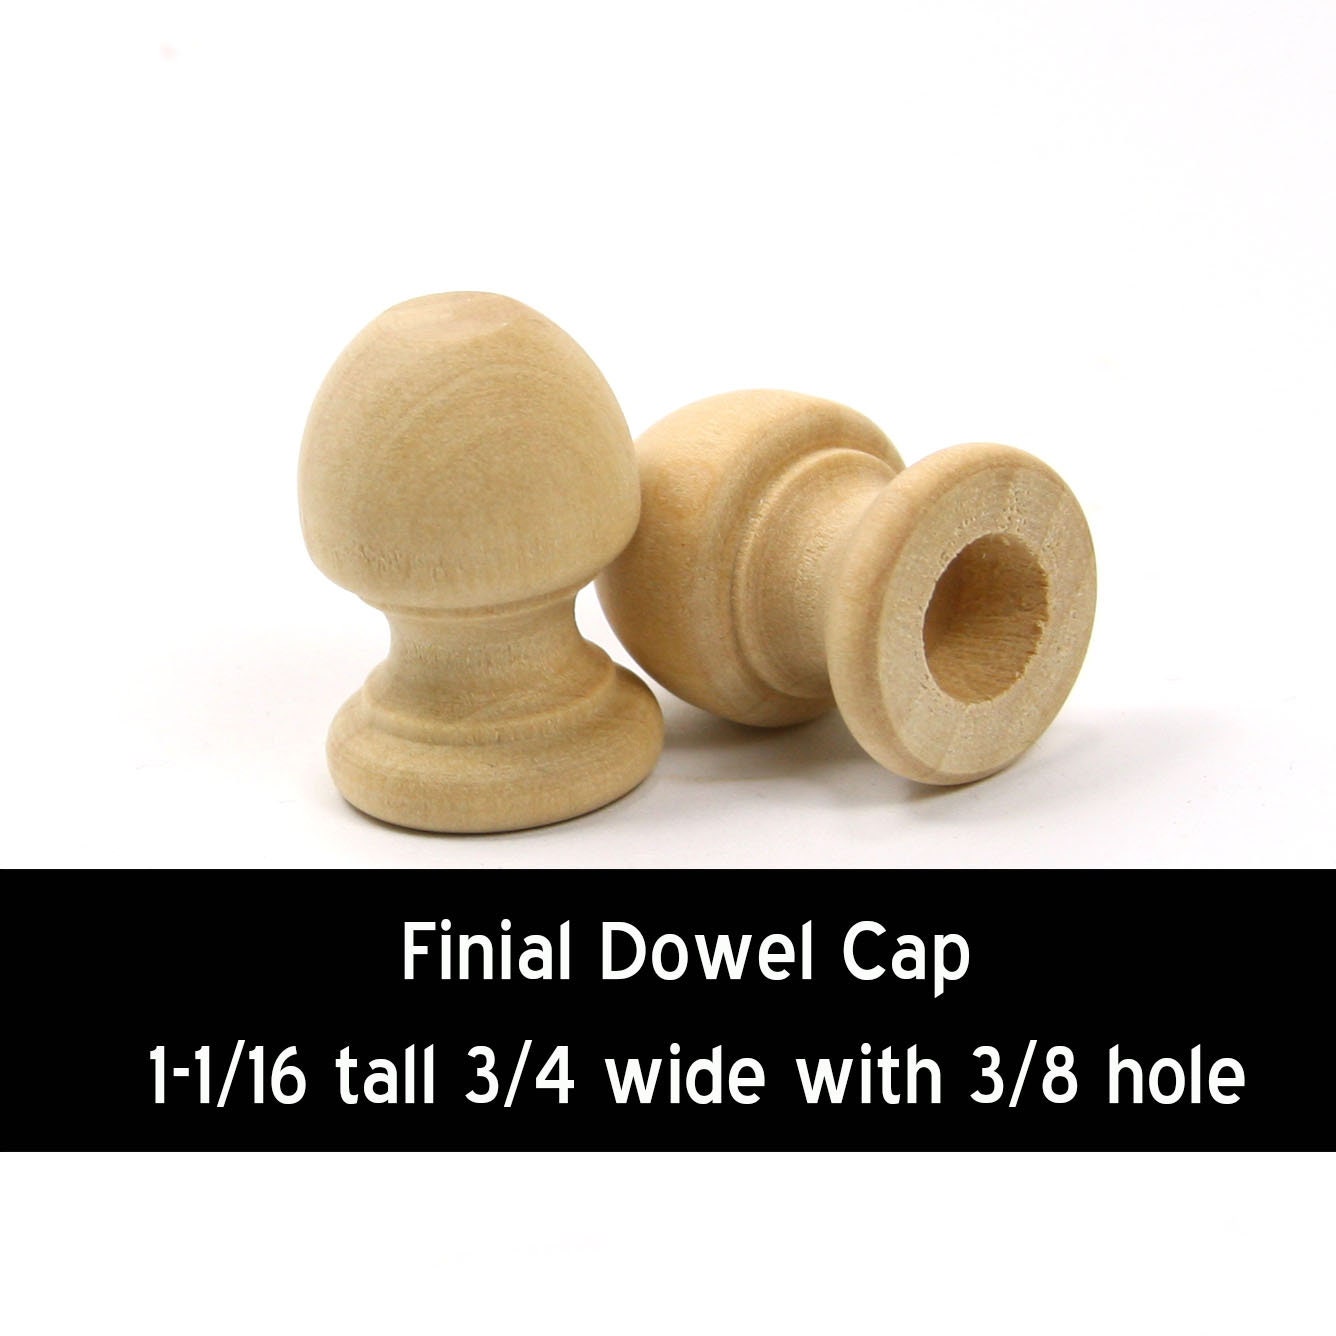 1-1/4 in. x 3/8 in. Round Dowel Wood Pegs, 12-Pack